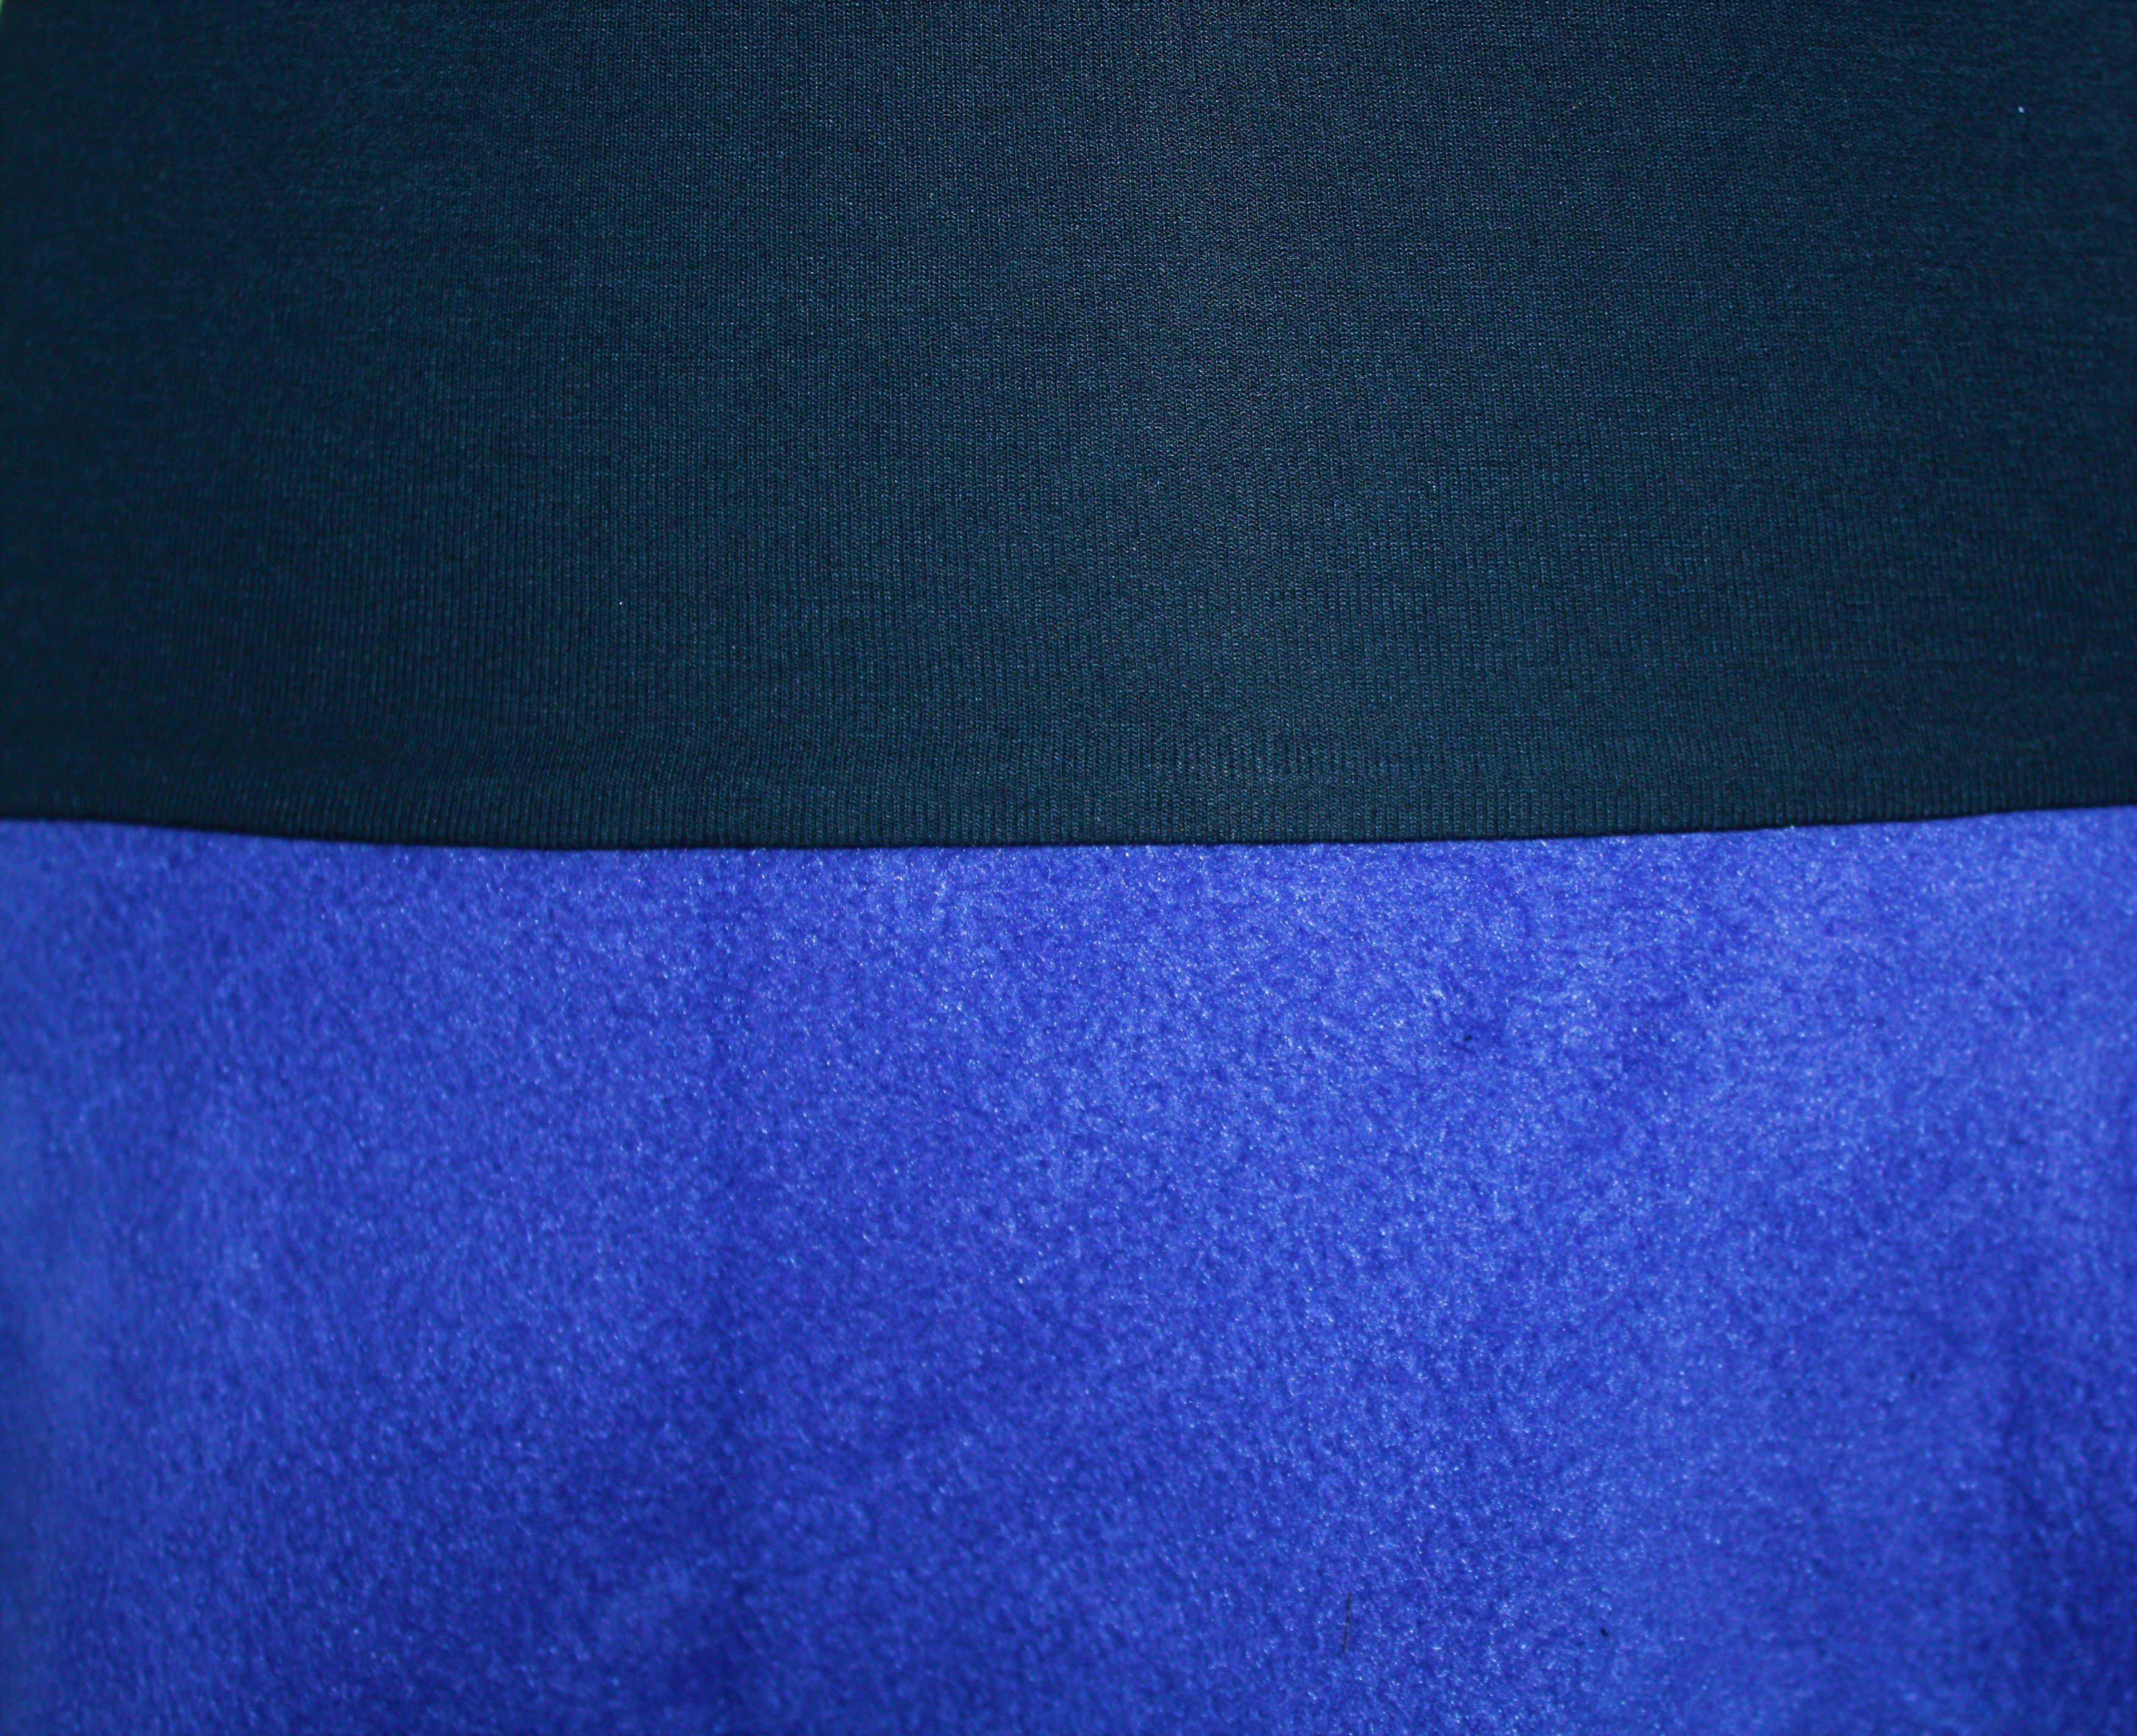 Fleece A-Linien-Rock elastischer Bund design Royalblau 57cm Blau dunkle Bund